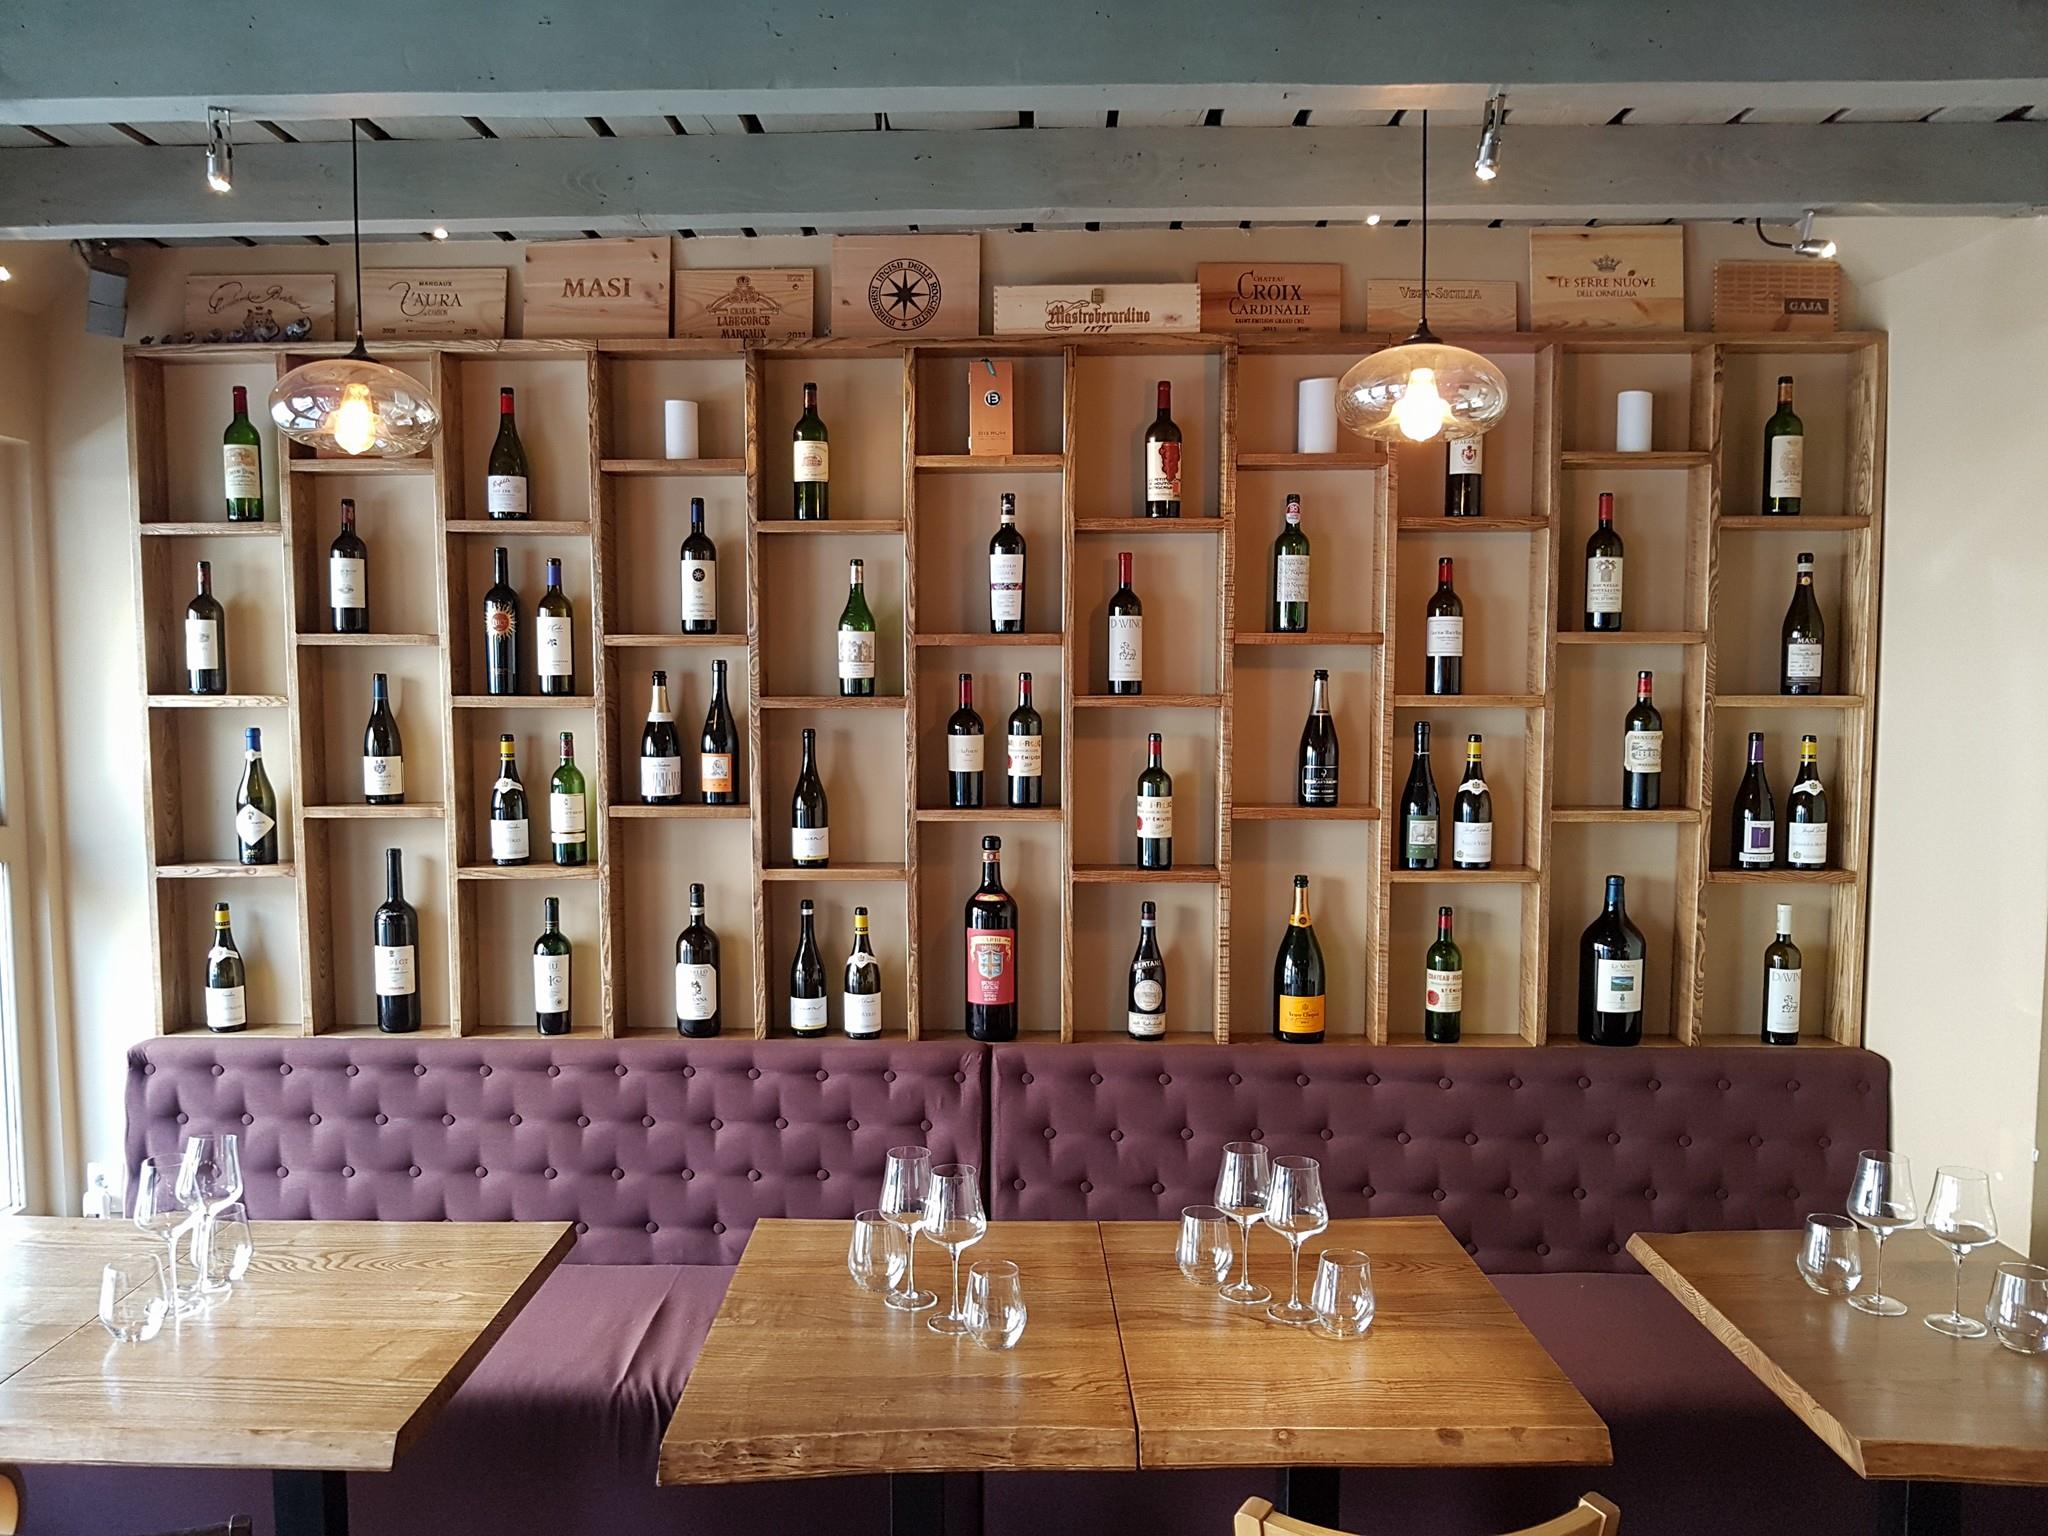 imagine din tasting room by ethic wine, cu un perete acoperit cu rafturi in care sunt expuse multe sticle de vin, in fata caruia se afla o canapea lunga, moc, capitonata, si 3 mese patrate, de lemn, pe una din ele stand asezate pahare goale de vin